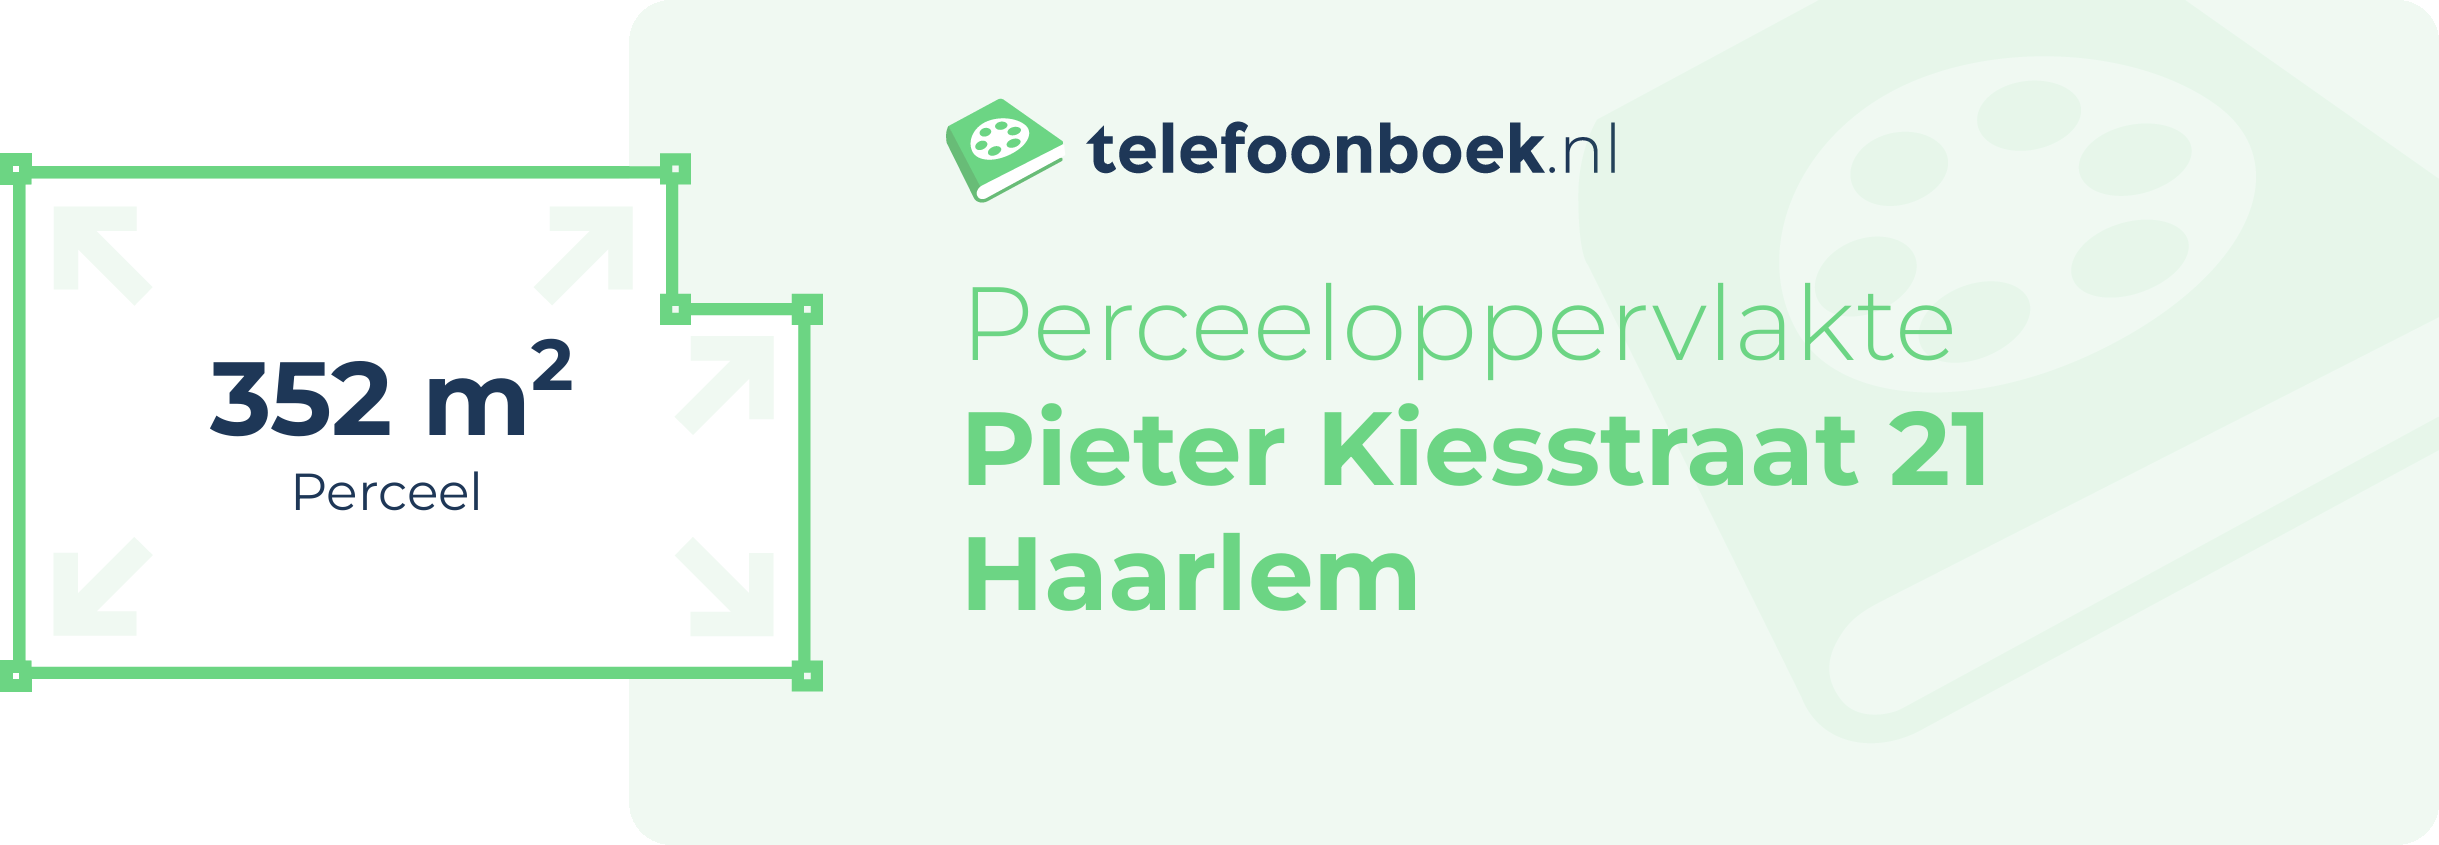 Perceeloppervlakte Pieter Kiesstraat 21 Haarlem